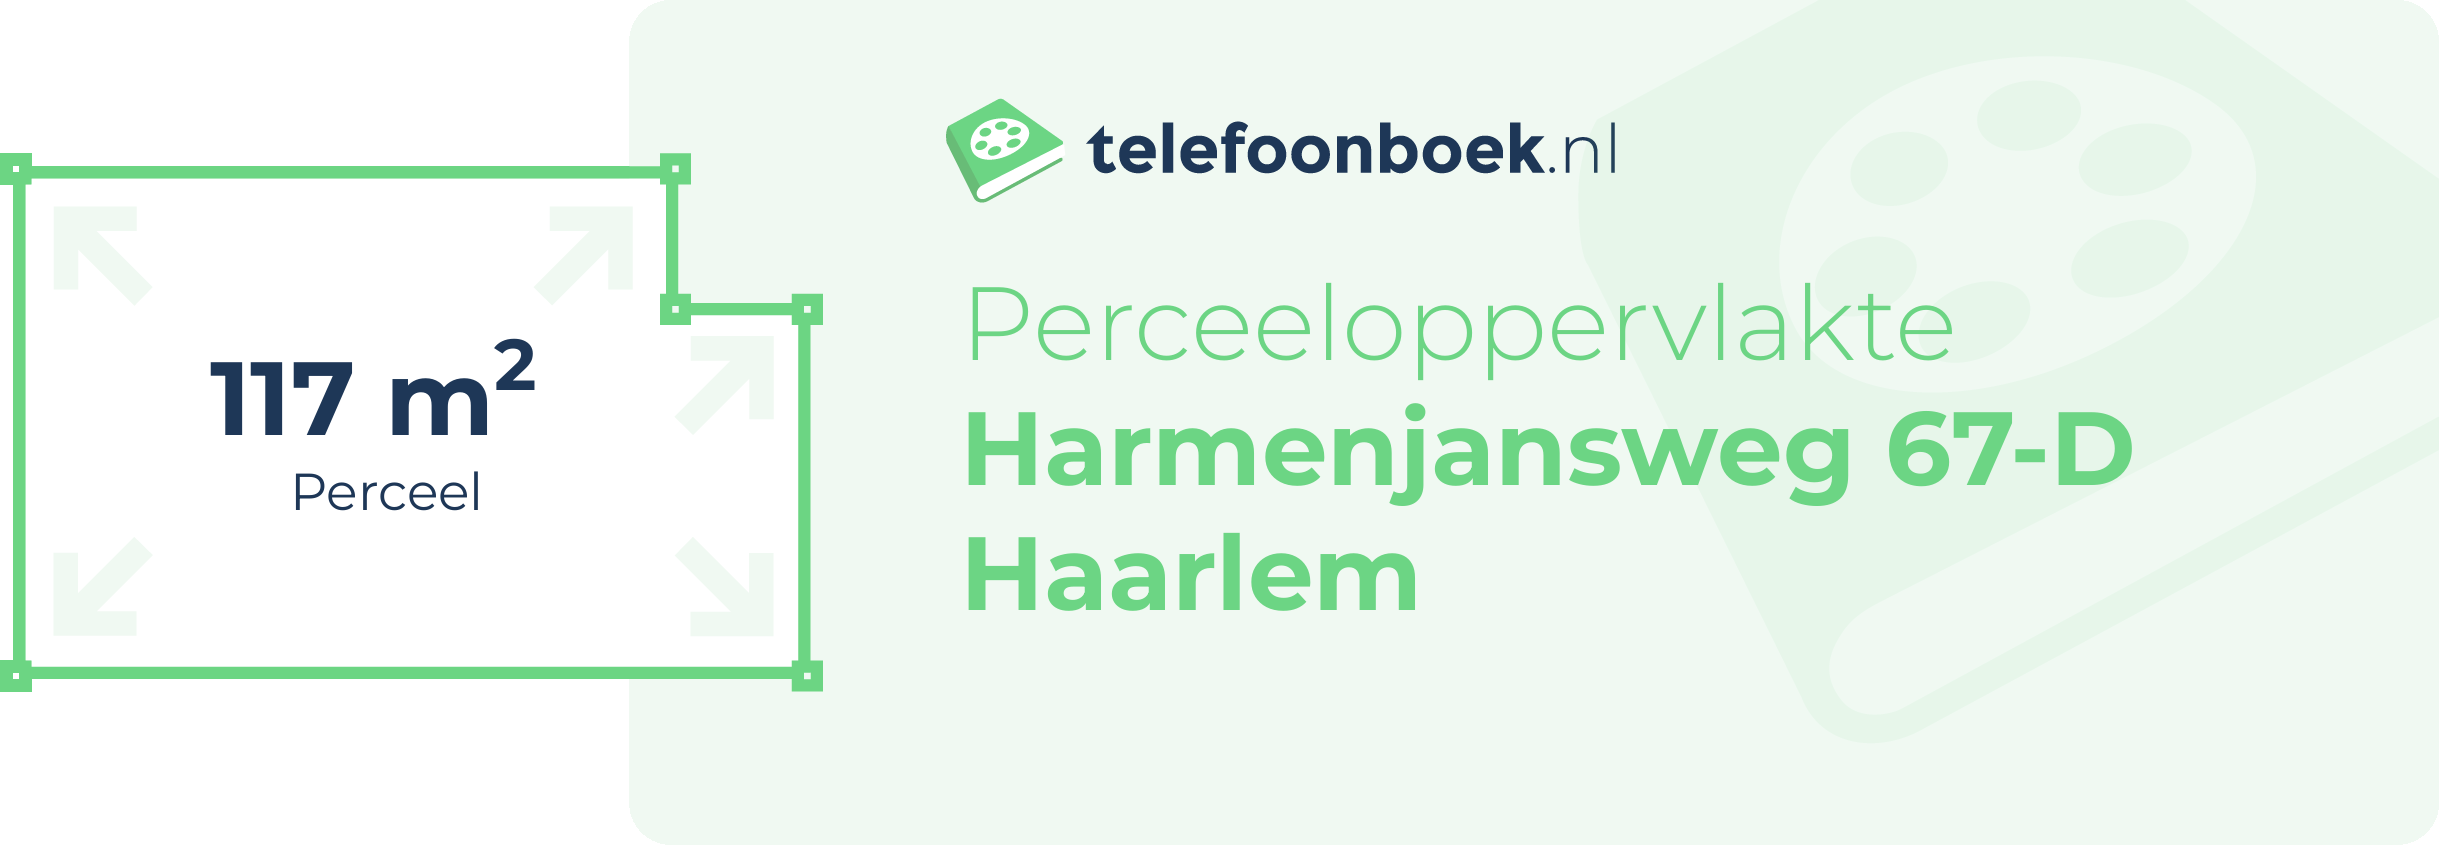 Perceeloppervlakte Harmenjansweg 67-D Haarlem